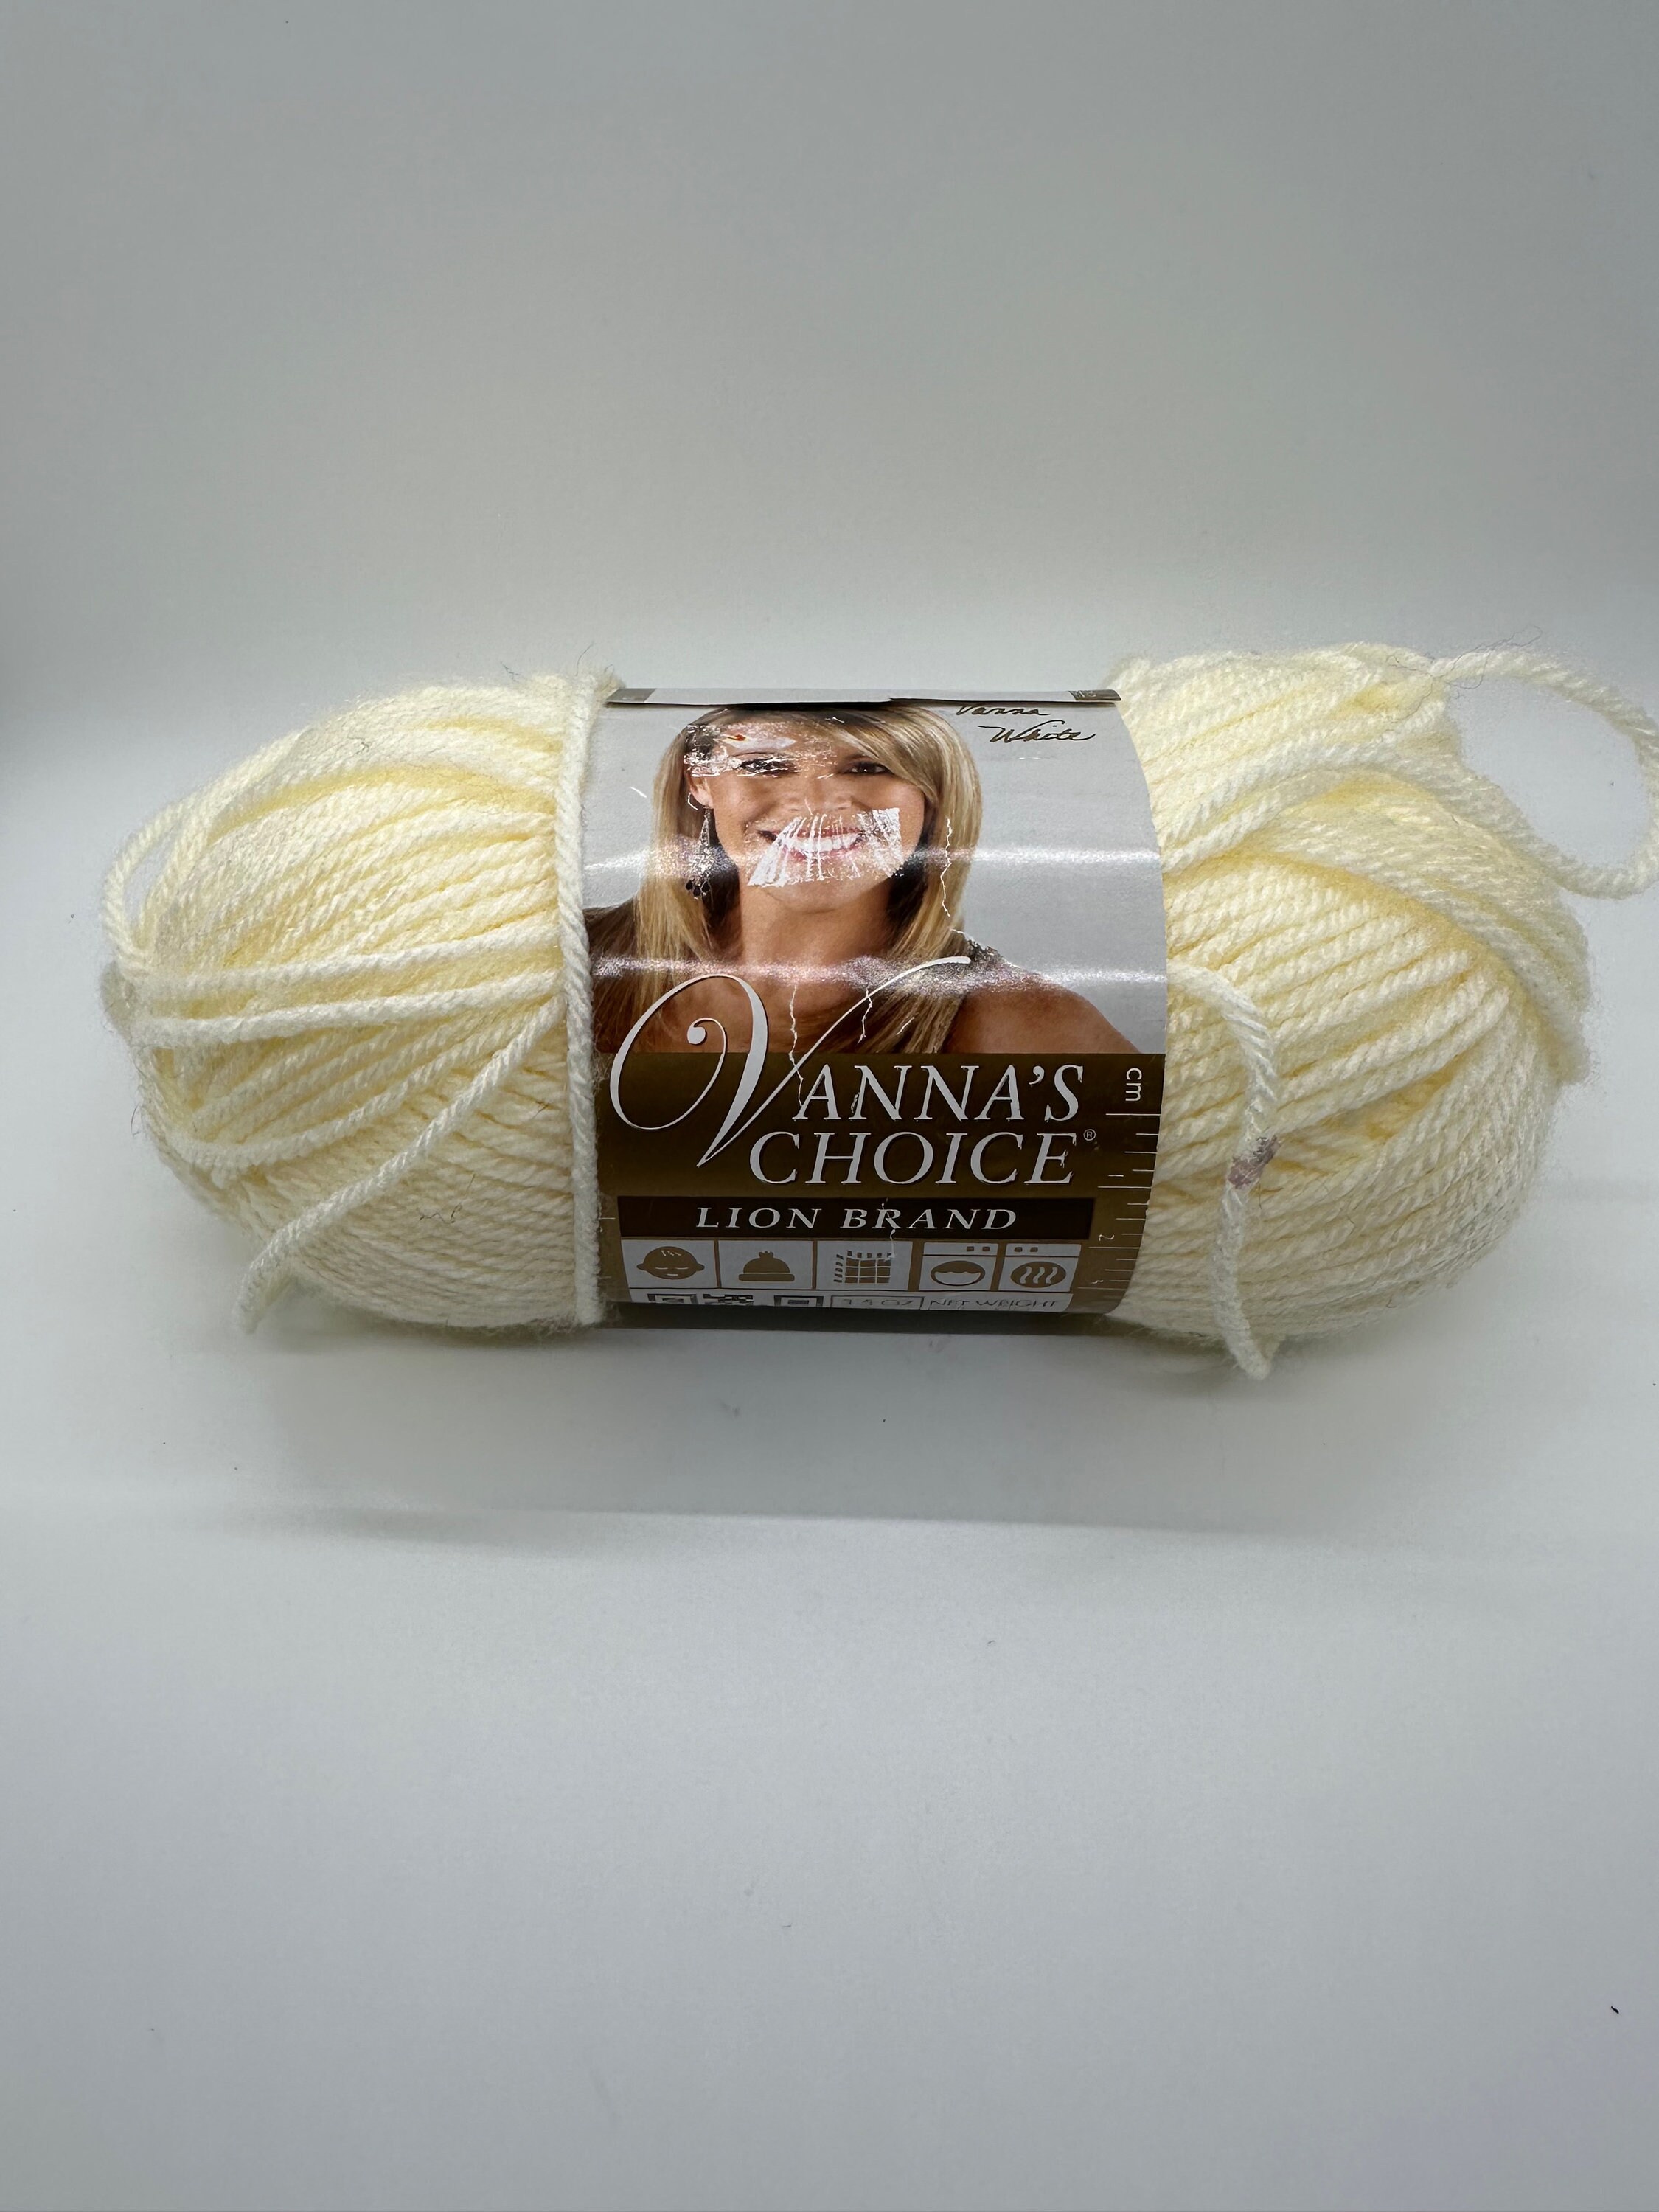  Lion Brand Yarn (1 Skein Vanna's Choice Yarn, White